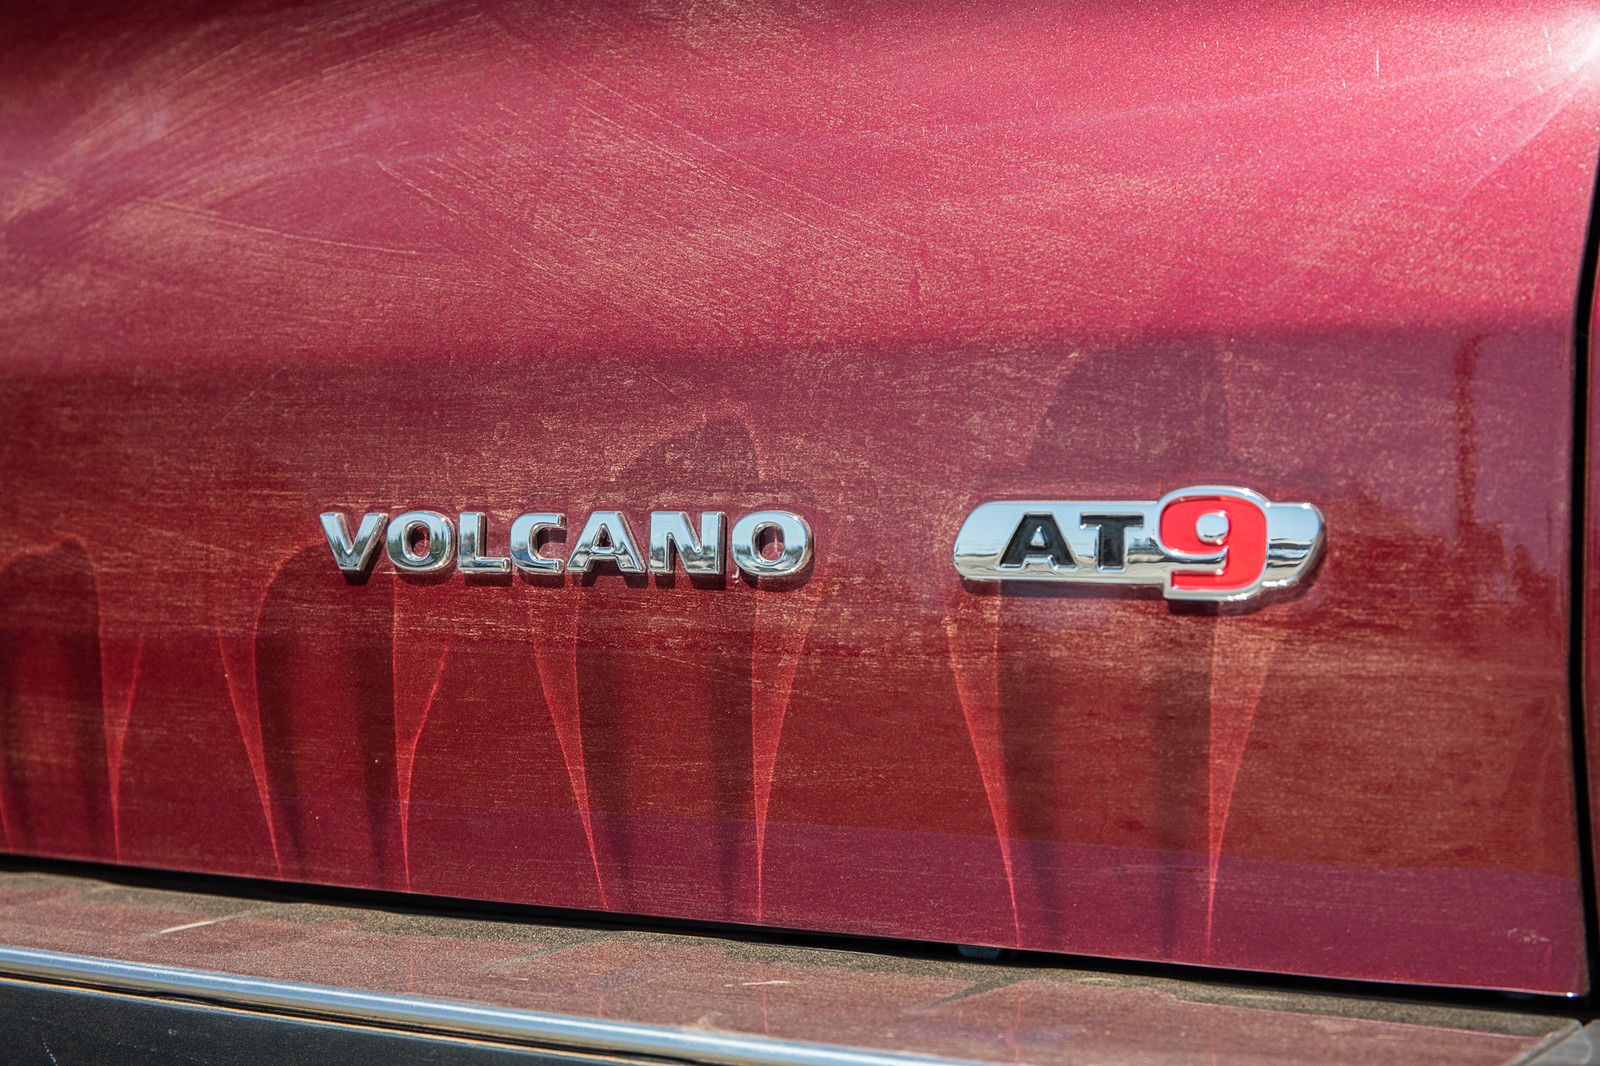 Símbolo da versão da Fiat Toro Volcano na tampa traseira